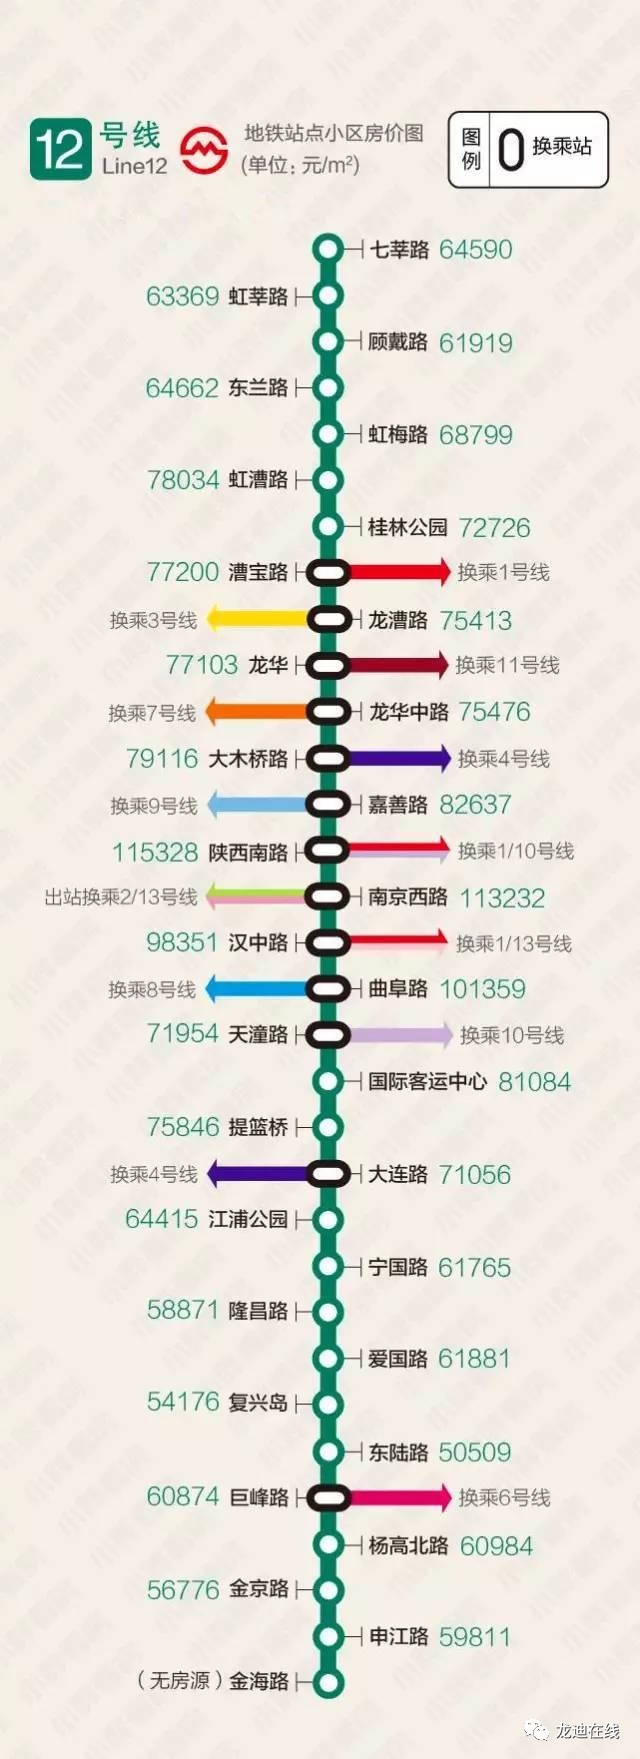 上海378地铁站周边房价发布!